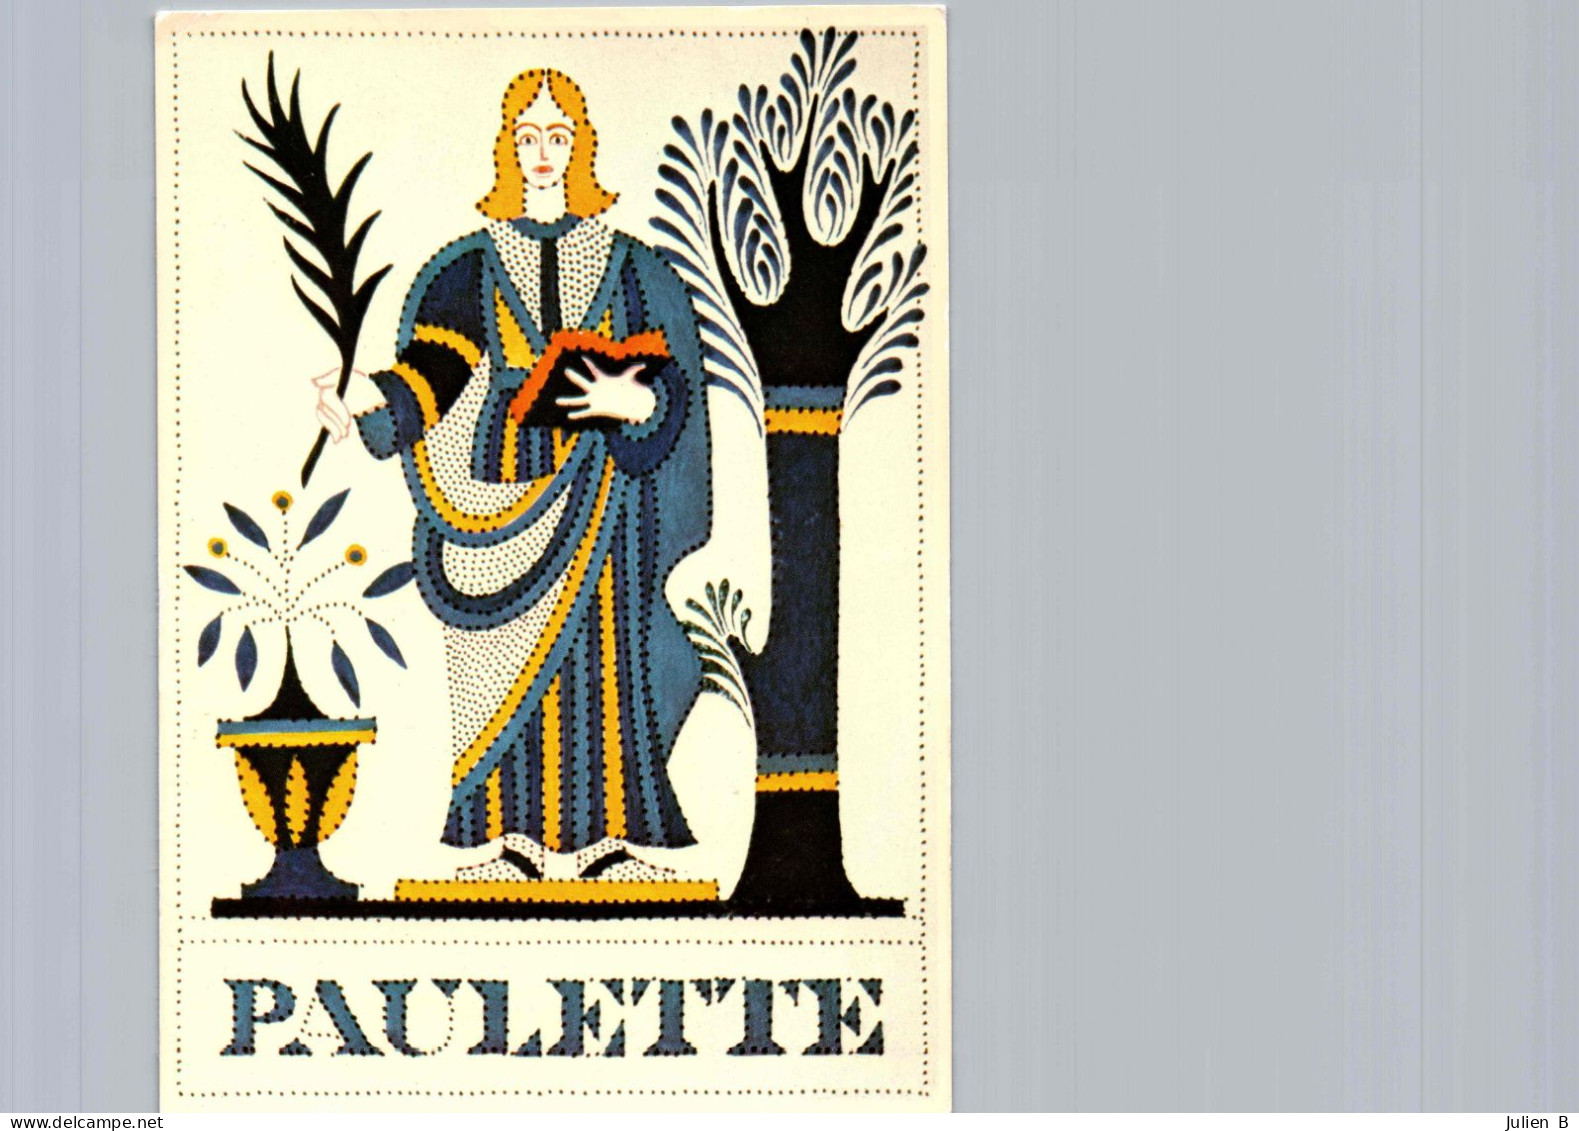 Paulette, Edition Betula - Prénoms